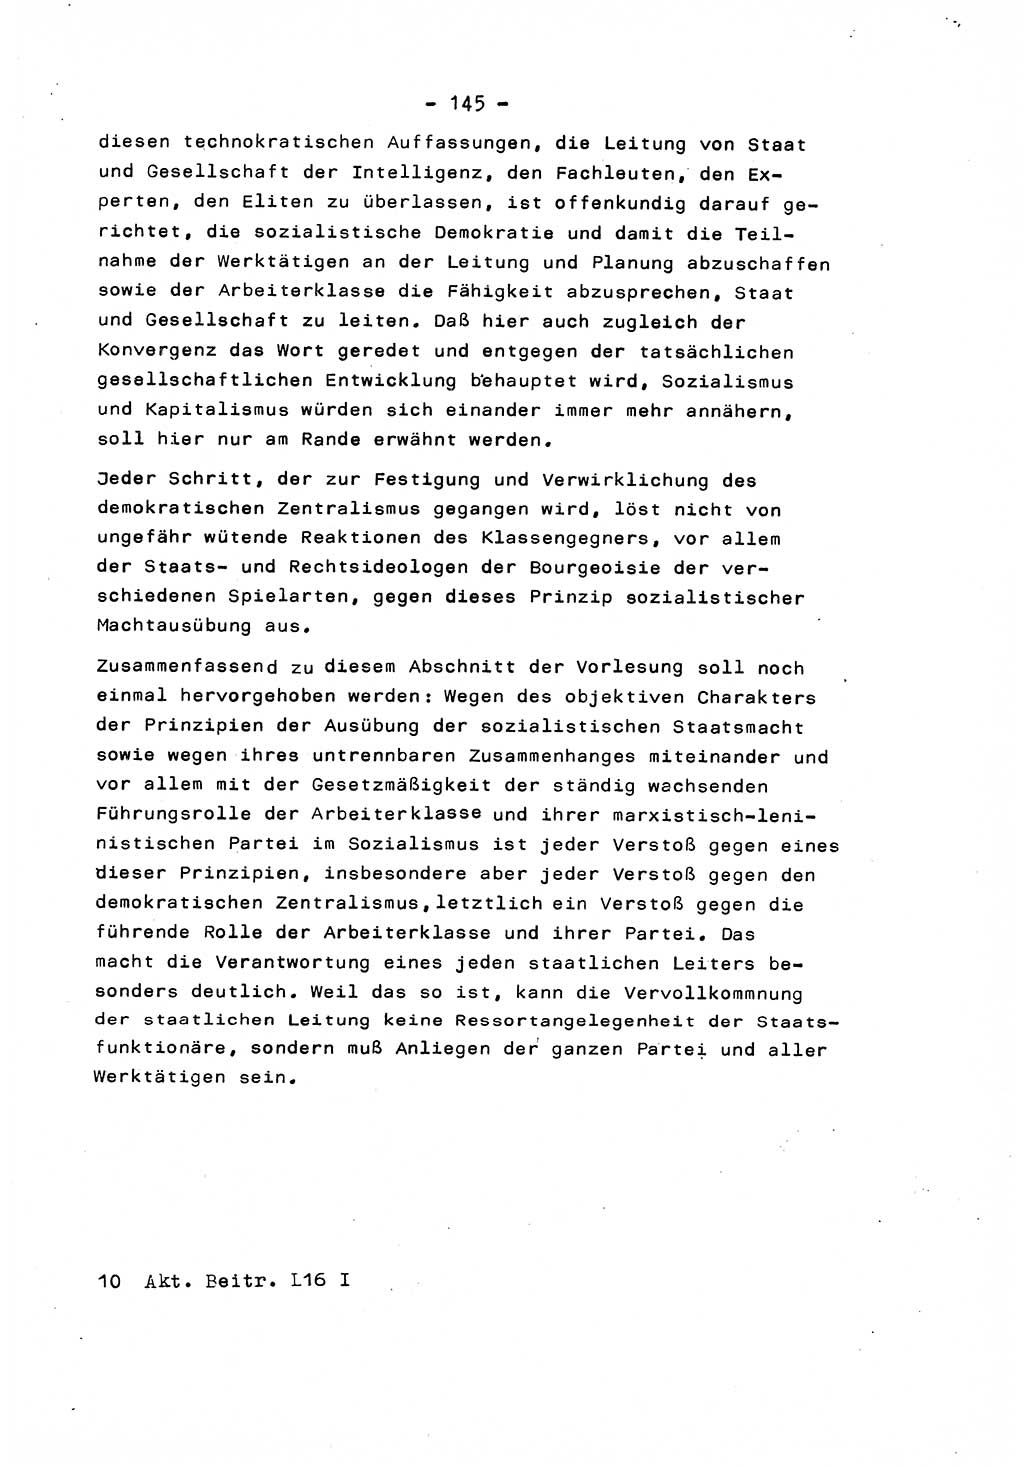 Marxistisch-leninistische Staats- und Rechtstheorie [Deutsche Demokratische Republik (DDR)] 1975, Seite 145 (ML St.-R.-Th. DDR 1975, S. 145)